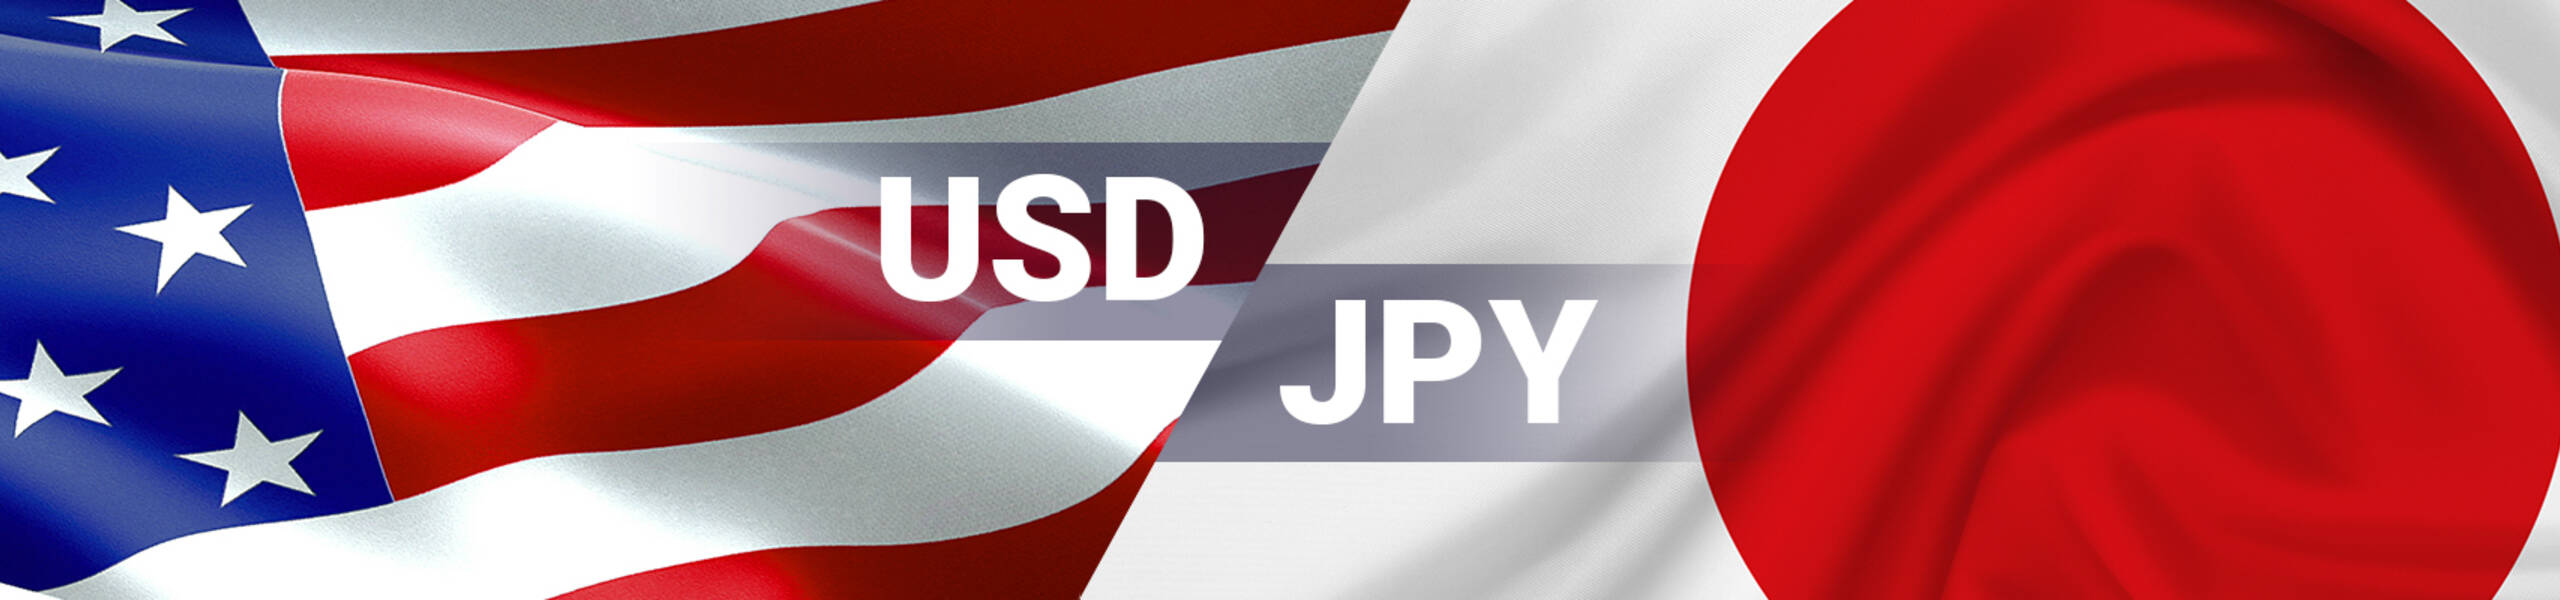 USD/JPY: triángulo de continuación bajista; apunta a 107.30